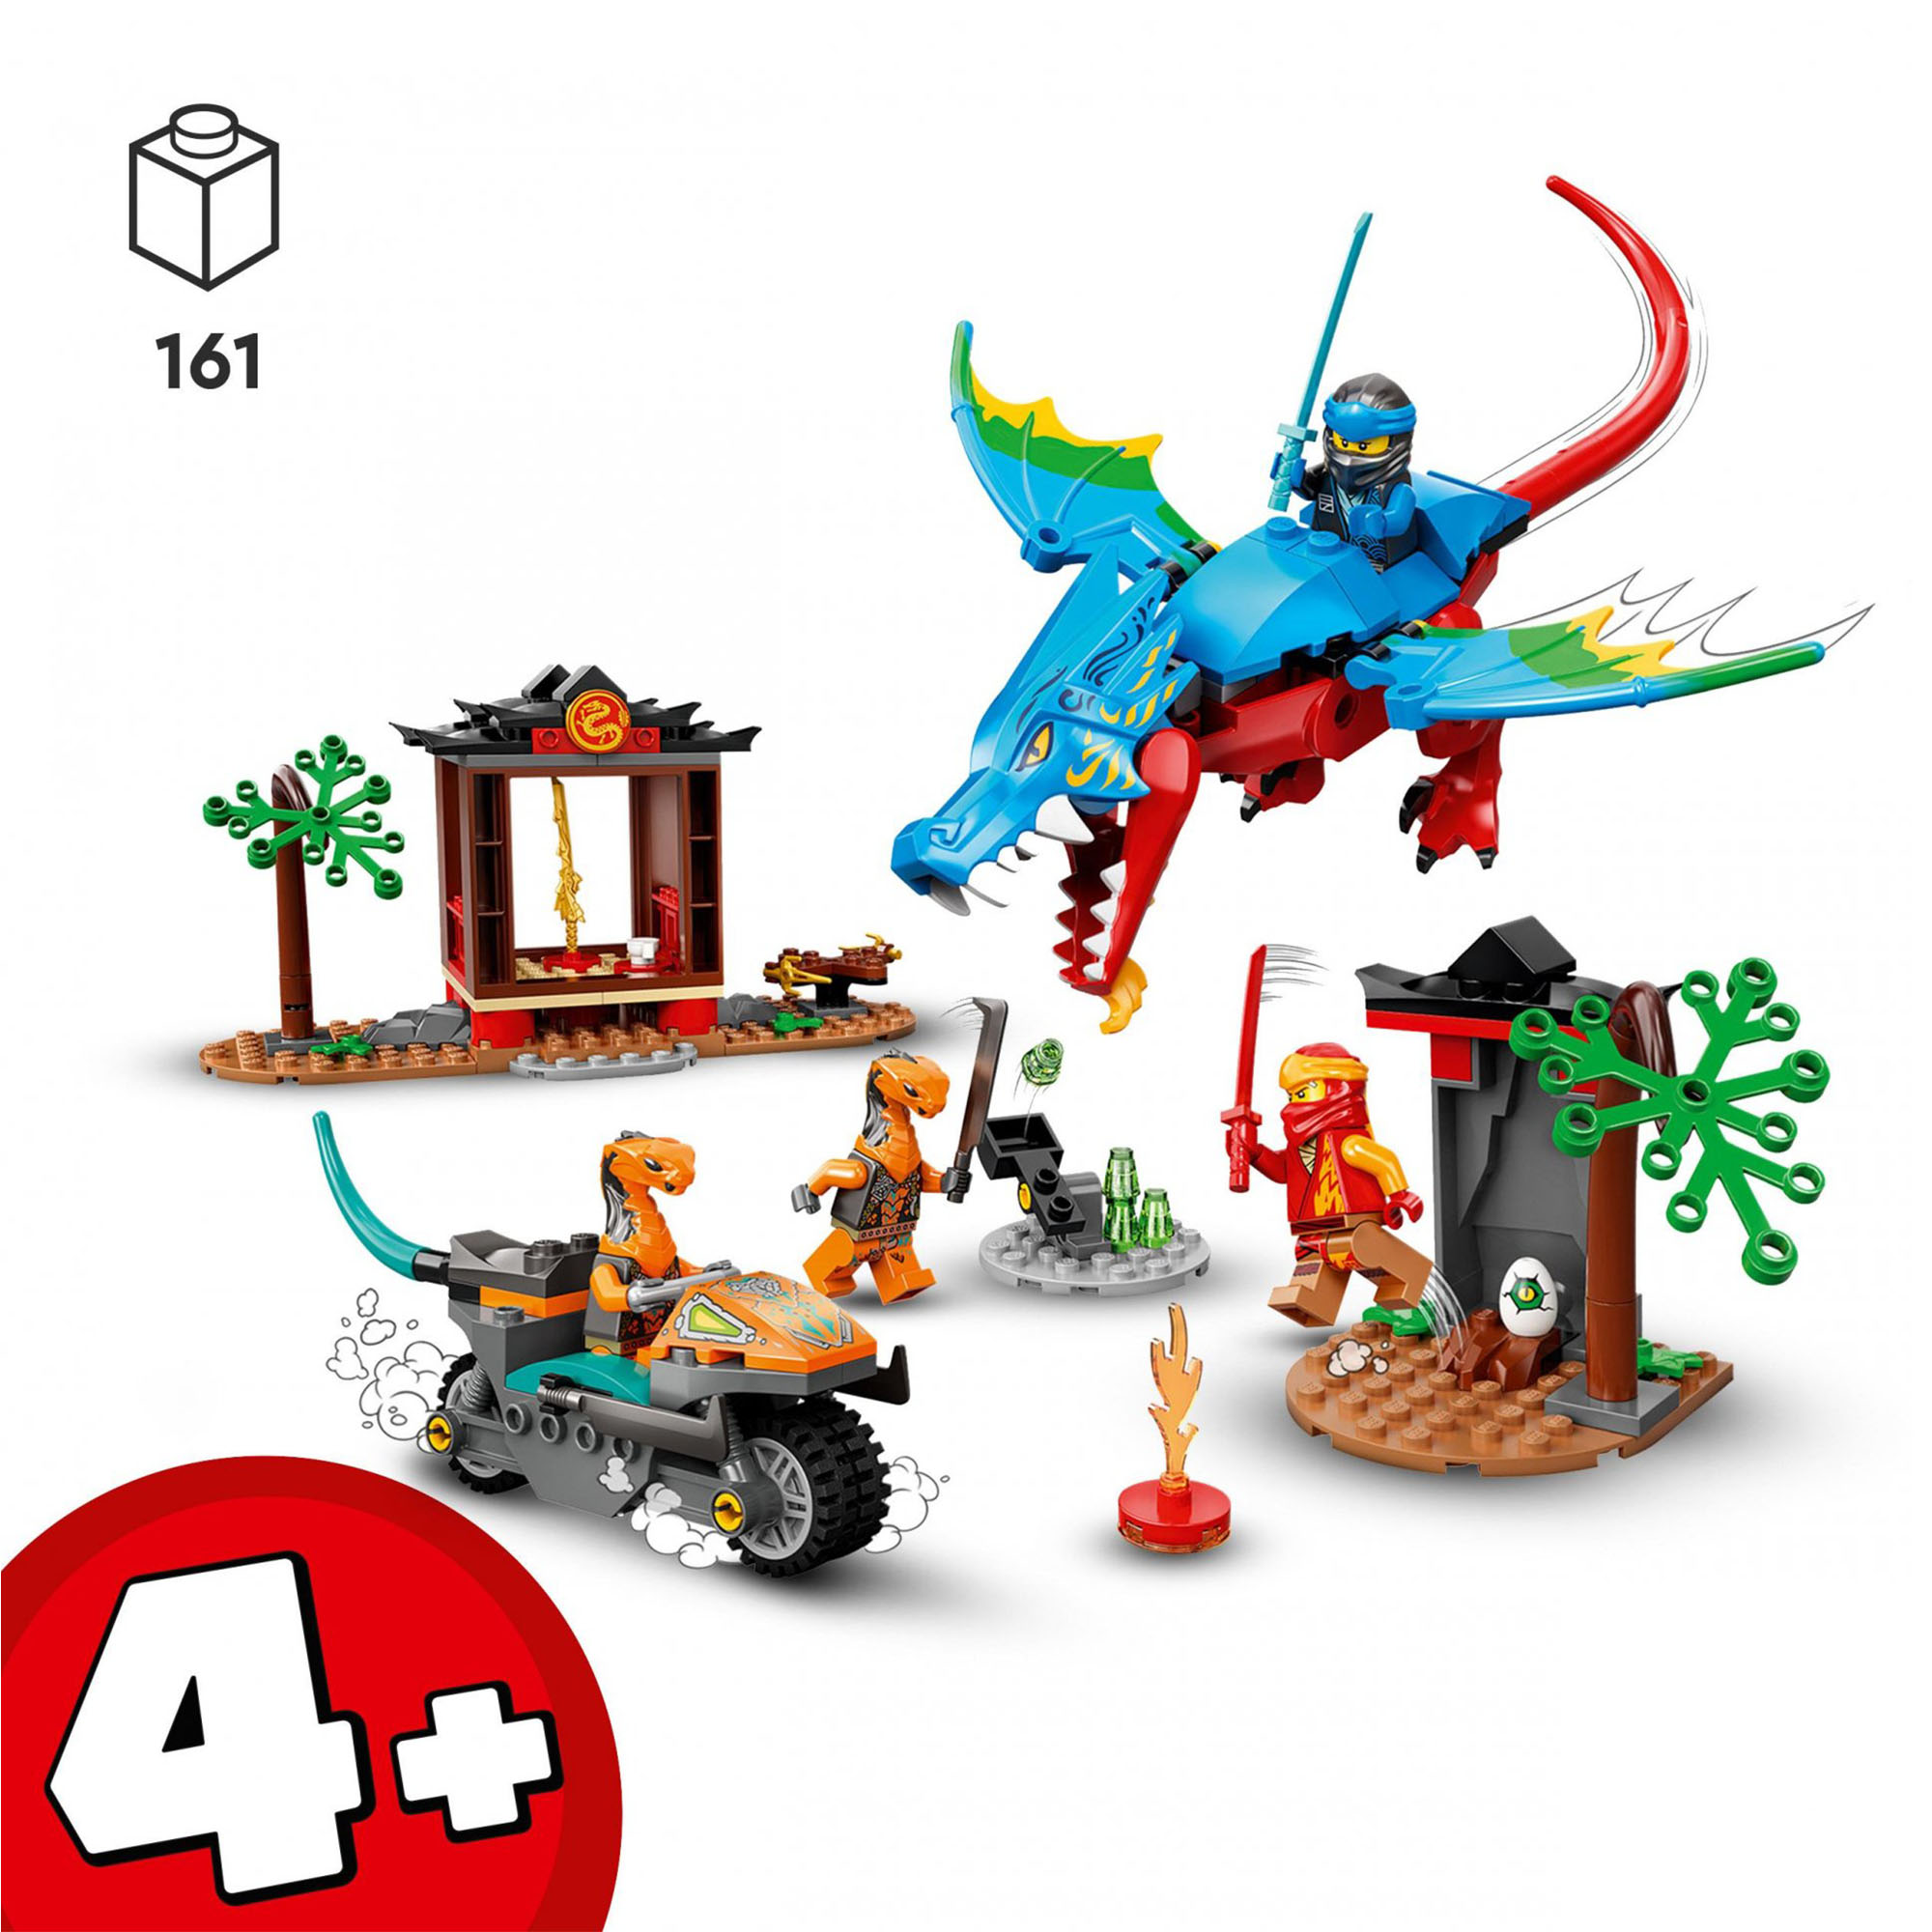 LEGO Ninjago Il Tempio del Ninja Dragone, Set di Costruzioni con Drago e Moto Gi 71759, , large